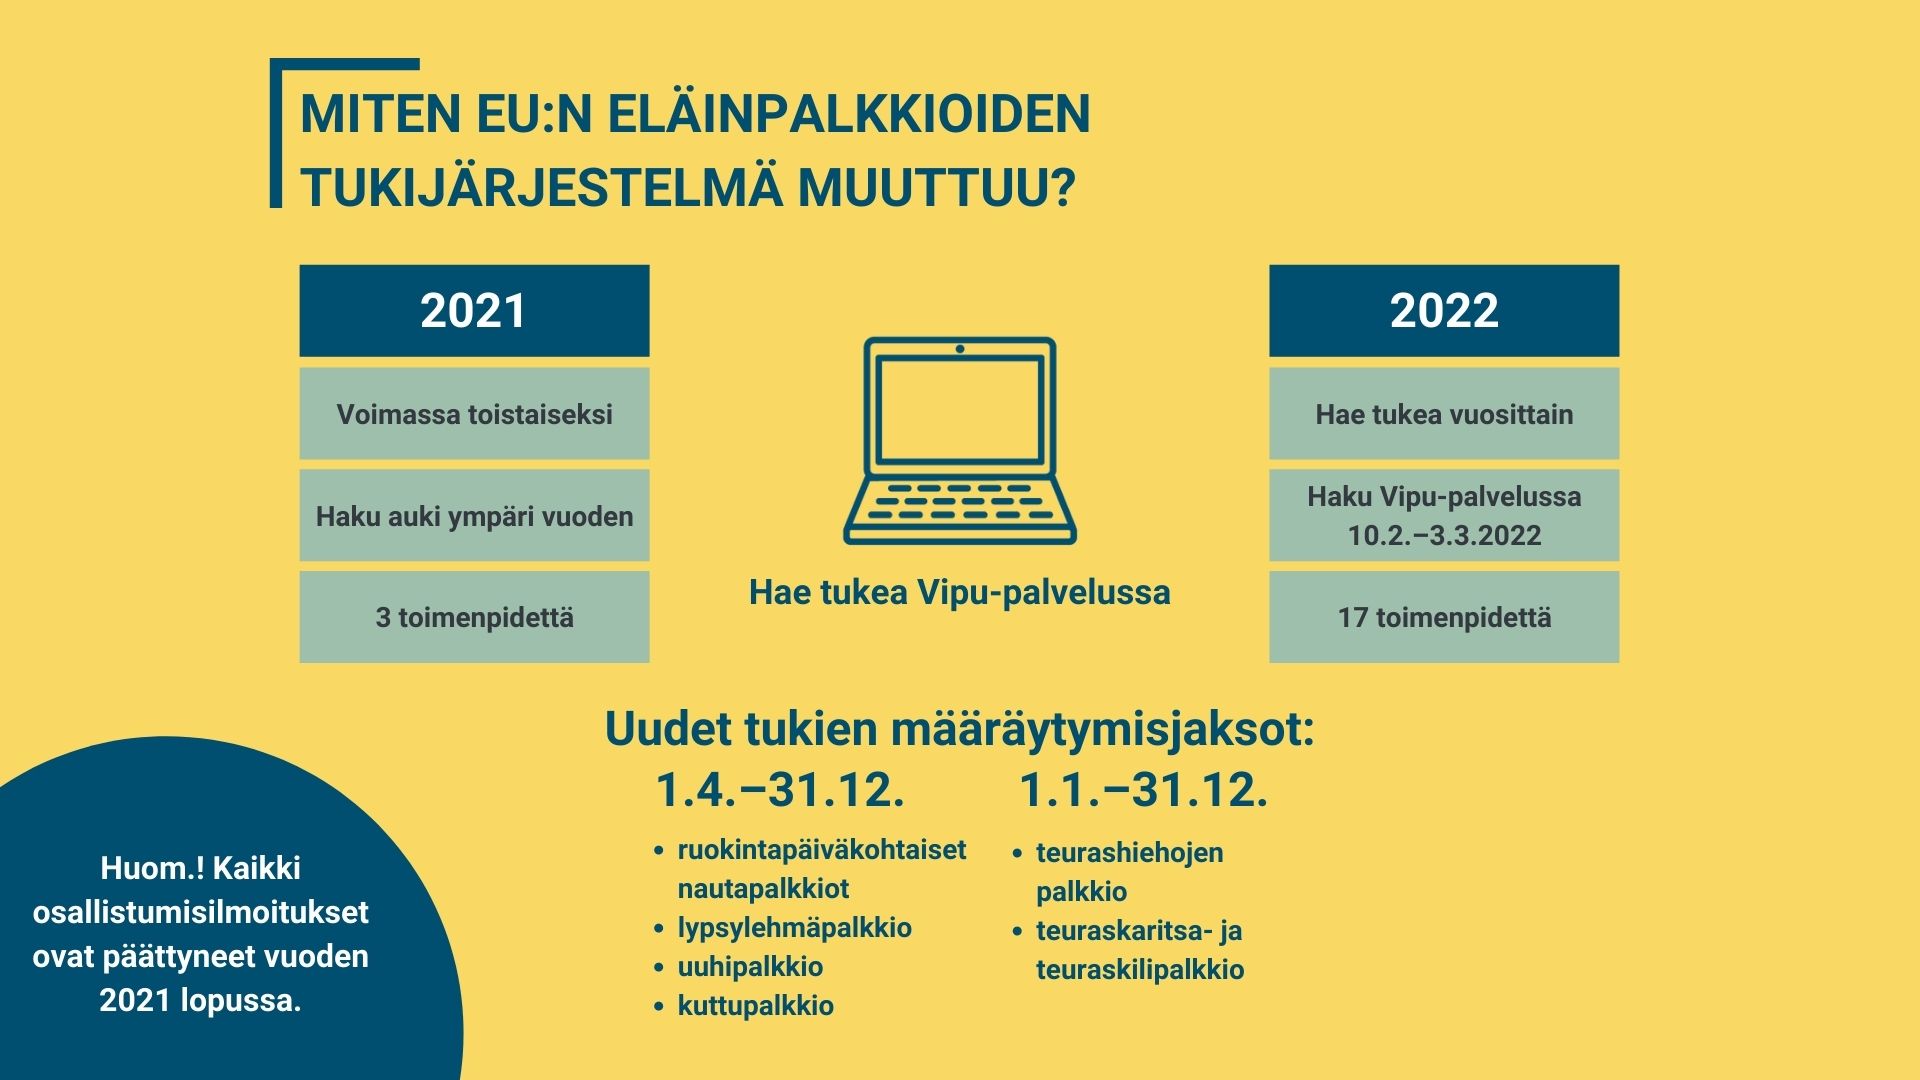 Piirroskuva tietokoneesta ja tekstit: Miten EU:n eläinpalkkioiden tukijärjestelmä muuttuu? 2021: Voimassa toistaiseksi, haku auki ympäri vuoden, 3 toimenpidettä. 2022: Hae tukea vuosittain, hakuaika 10.2.–3.3.2022, 17 toimenpidettä.